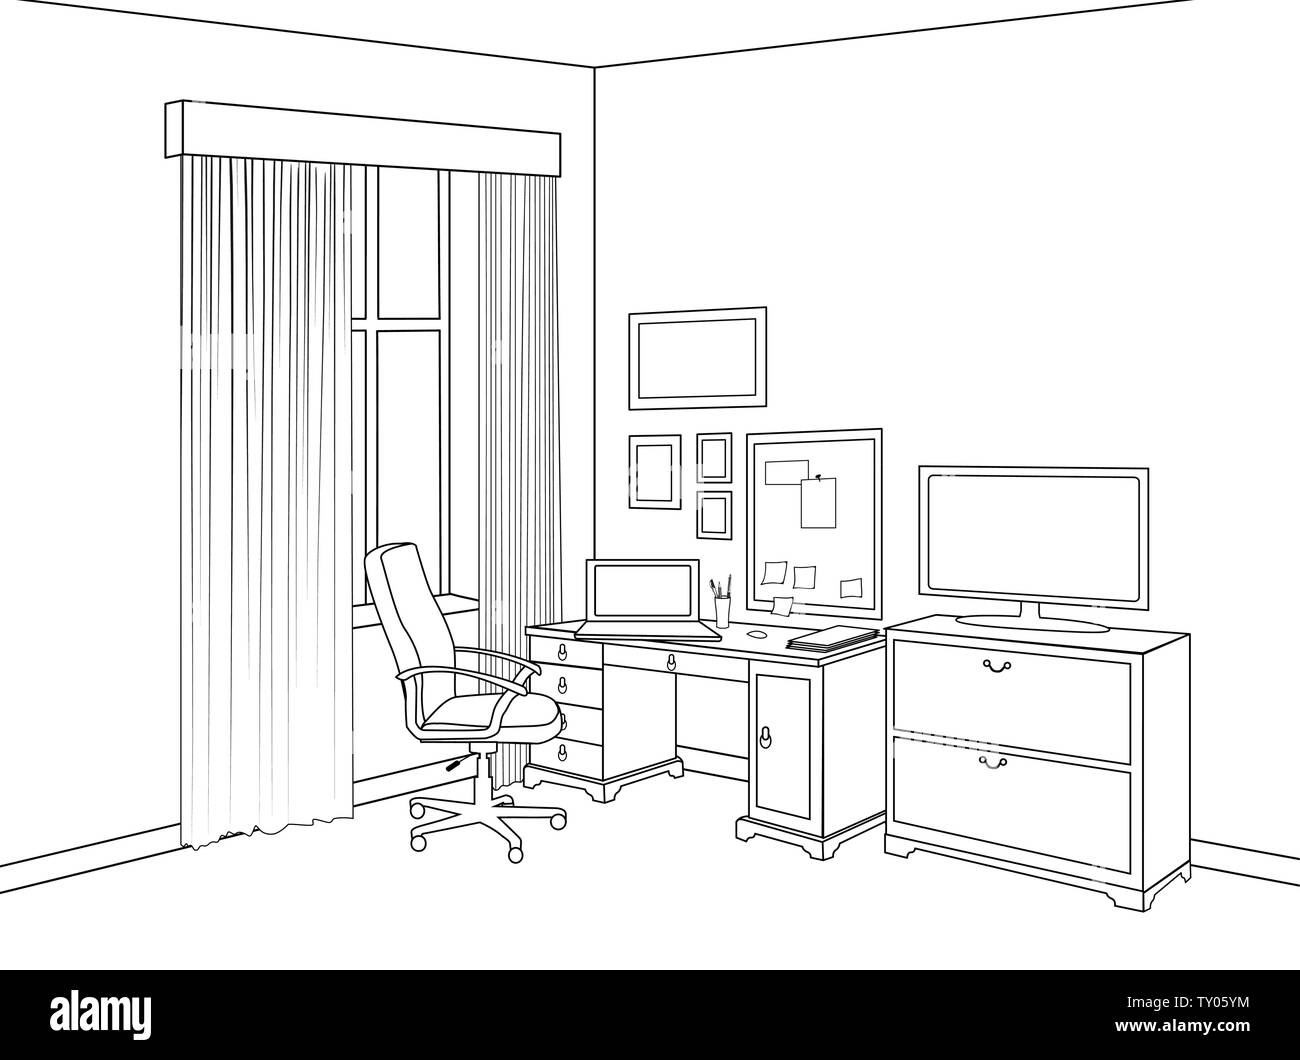 Premium Photo | Furniture design sketching